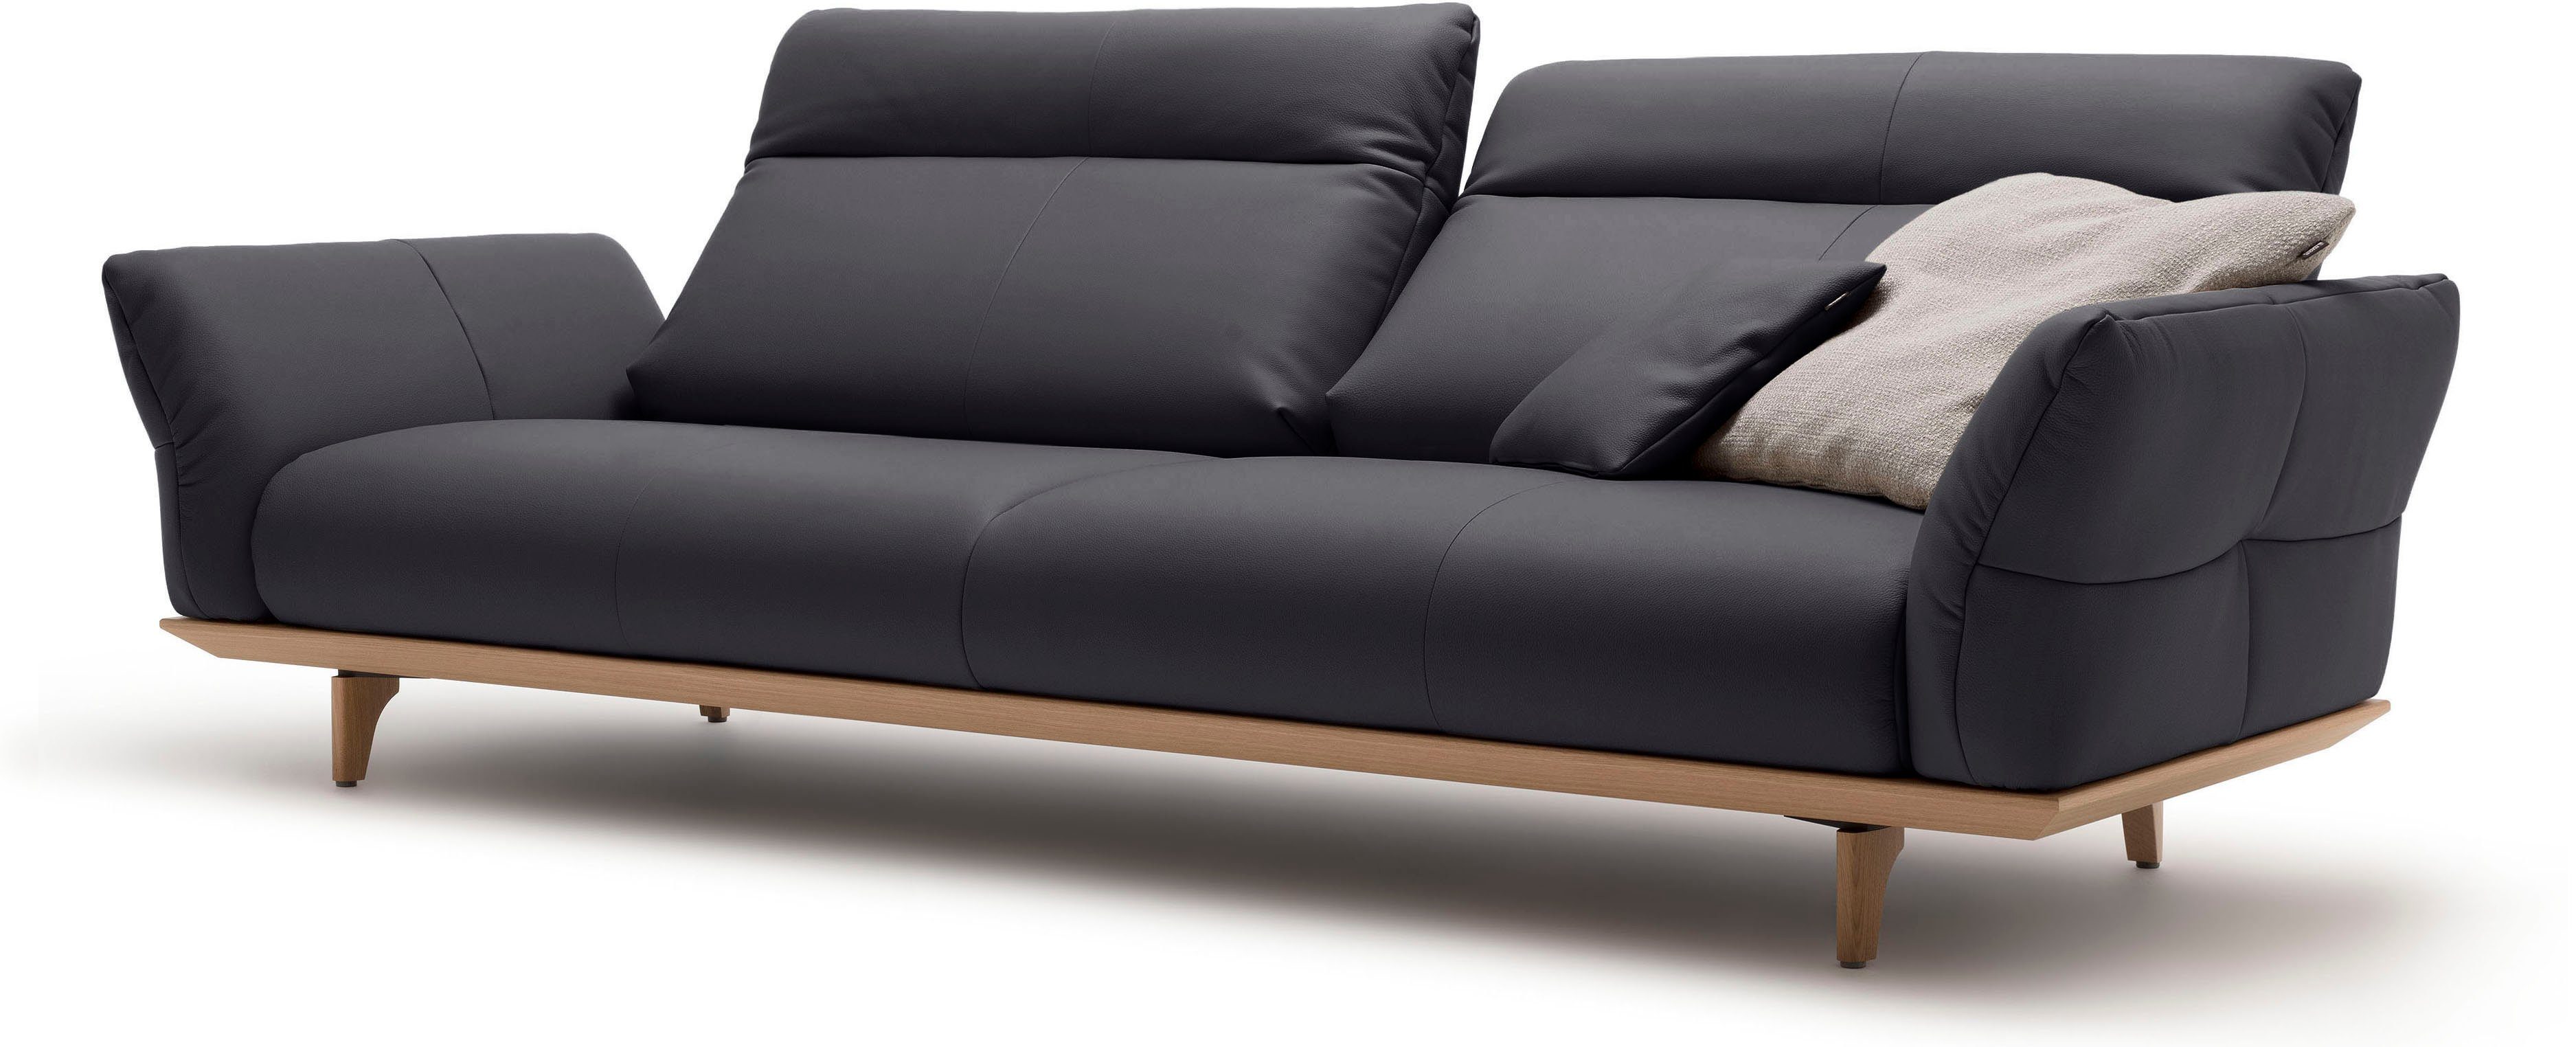 4-Sitzer Sockel Eiche, hülsta natur, hs.460, Füße sofa Breite in 248 cm Eiche